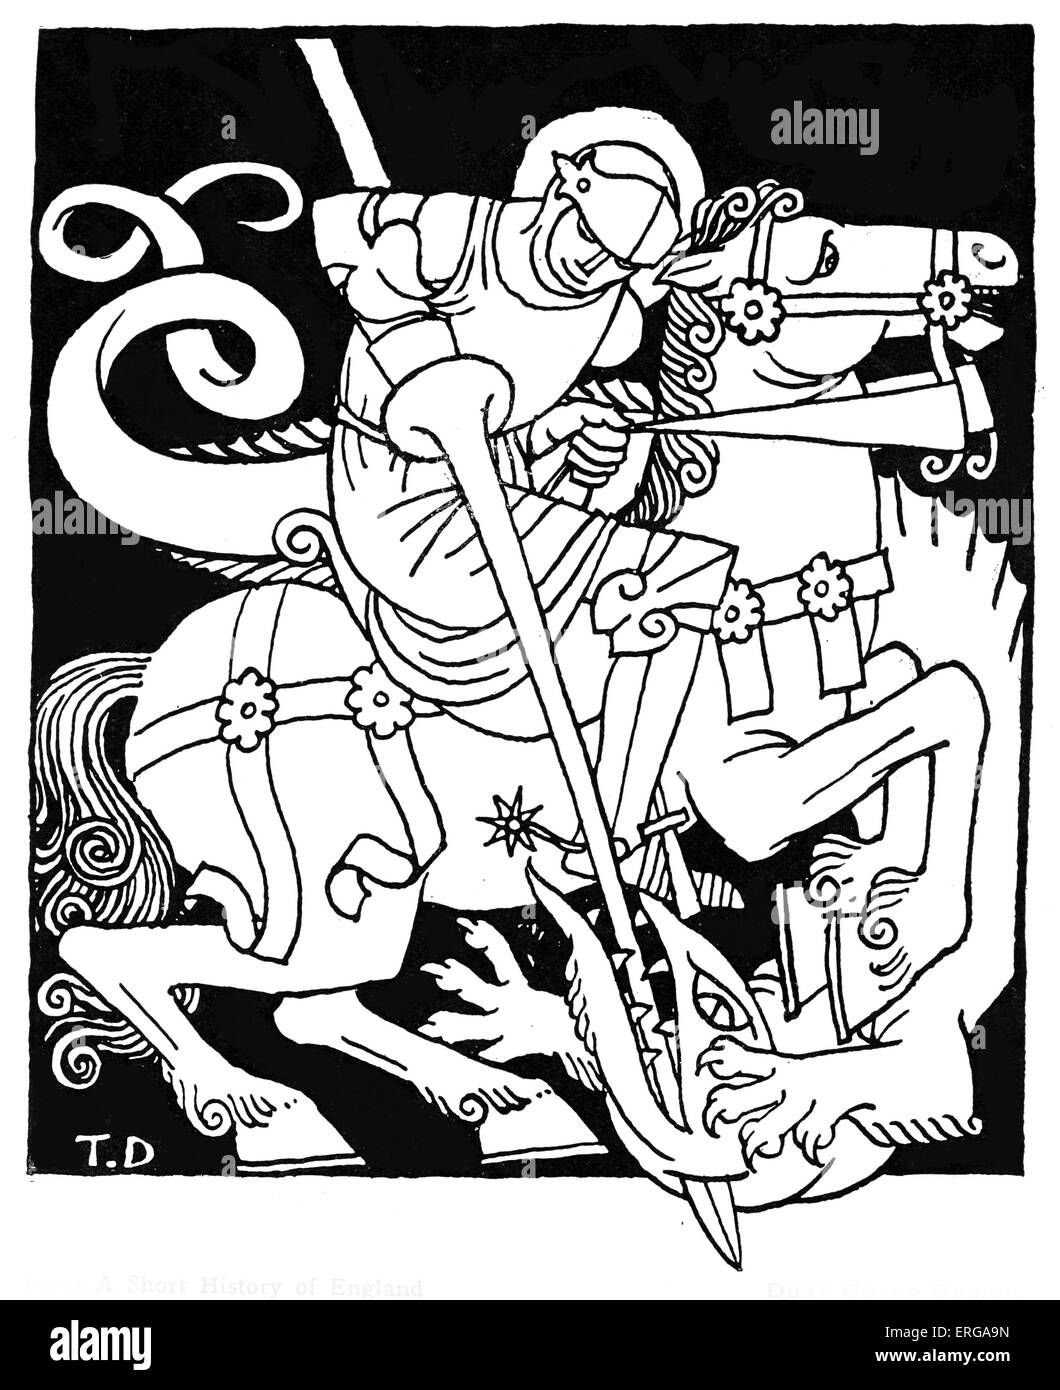 Saint George et le Dragon. Illustration d'une courte histoire de l'Angleterre par G.K. Chesterton. Épisode d'histoire de l'anglais Banque D'Images